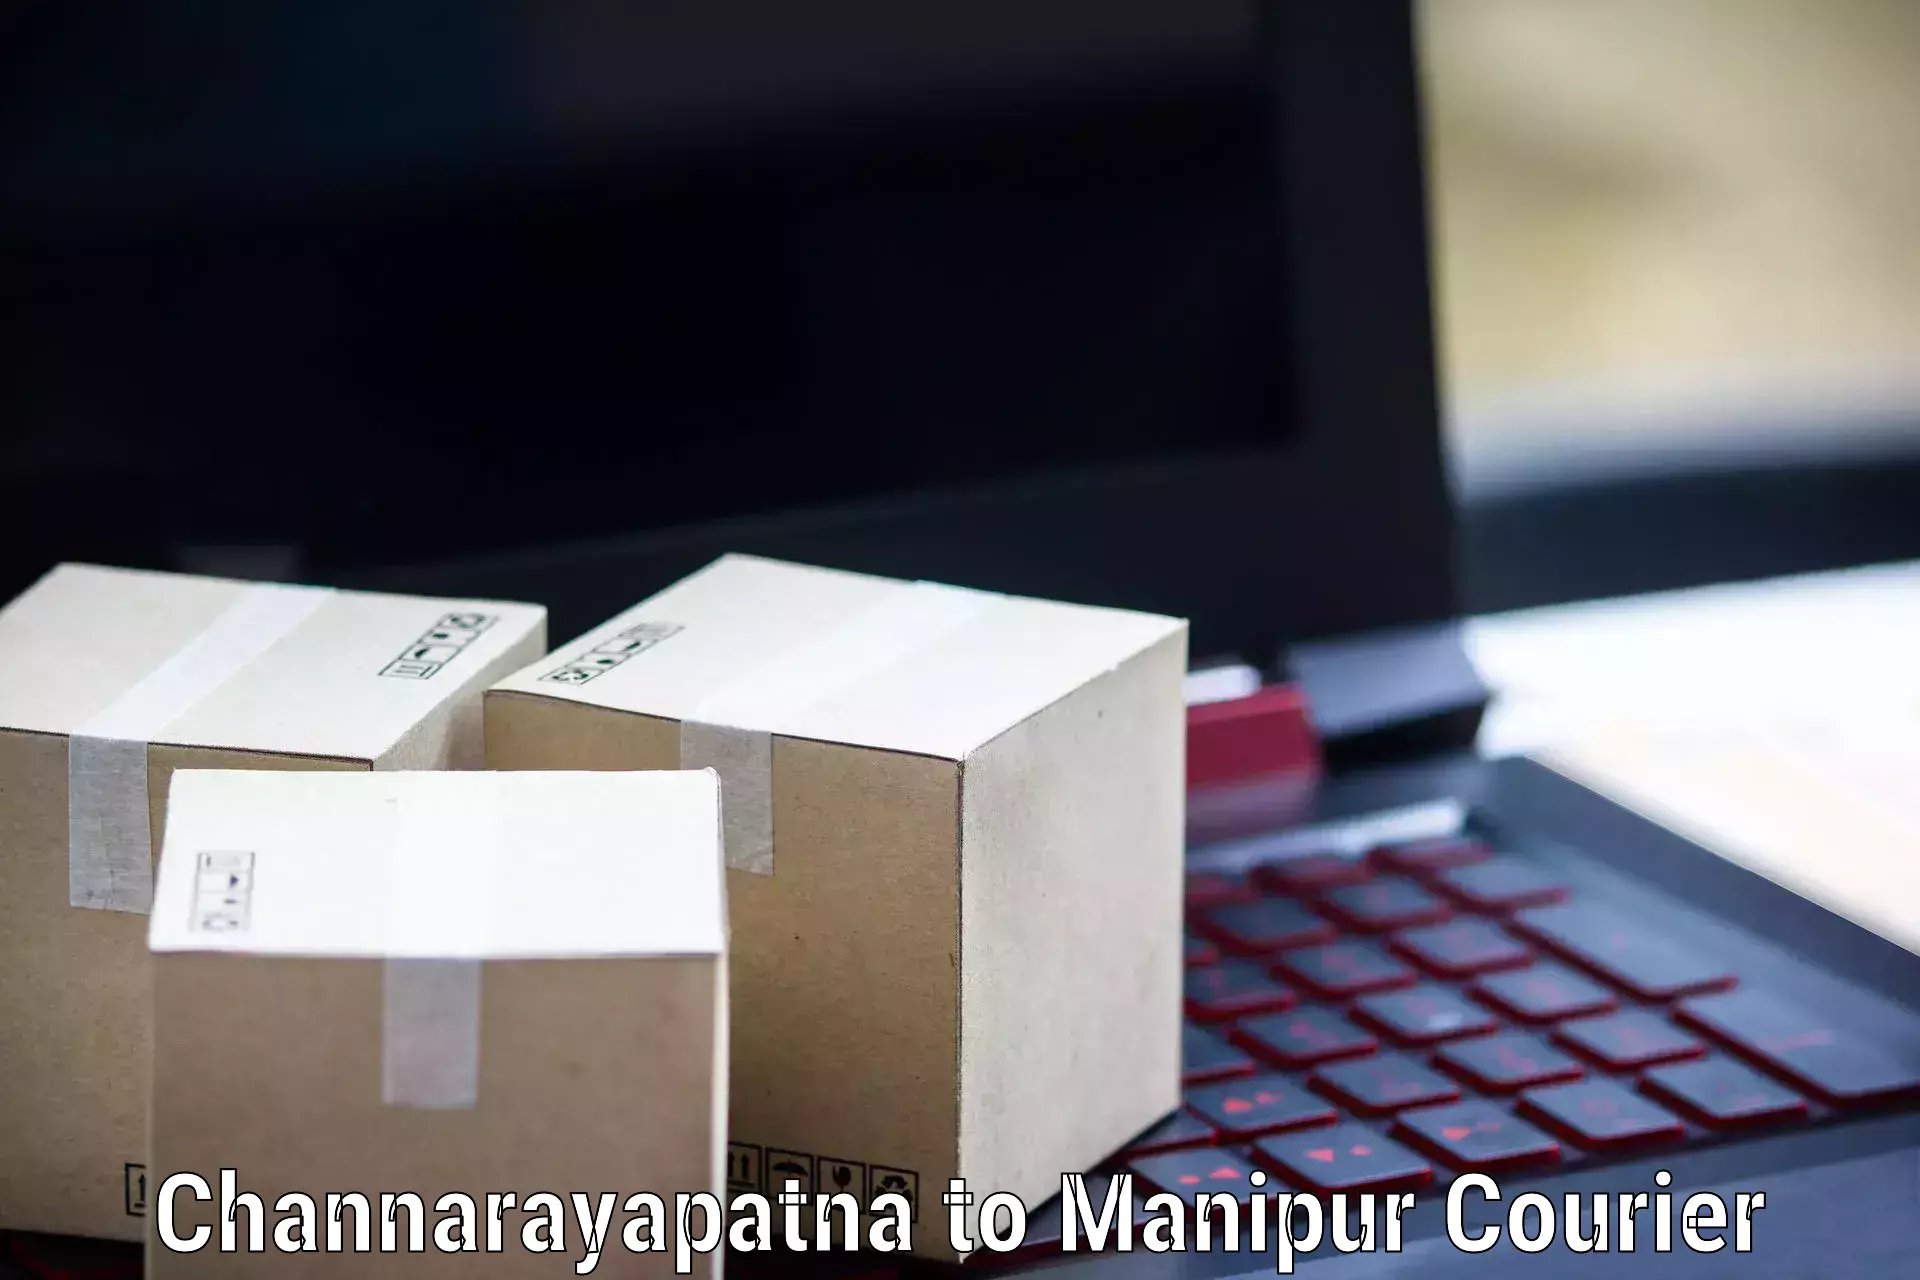 Courier service innovation Channarayapatna to Senapati